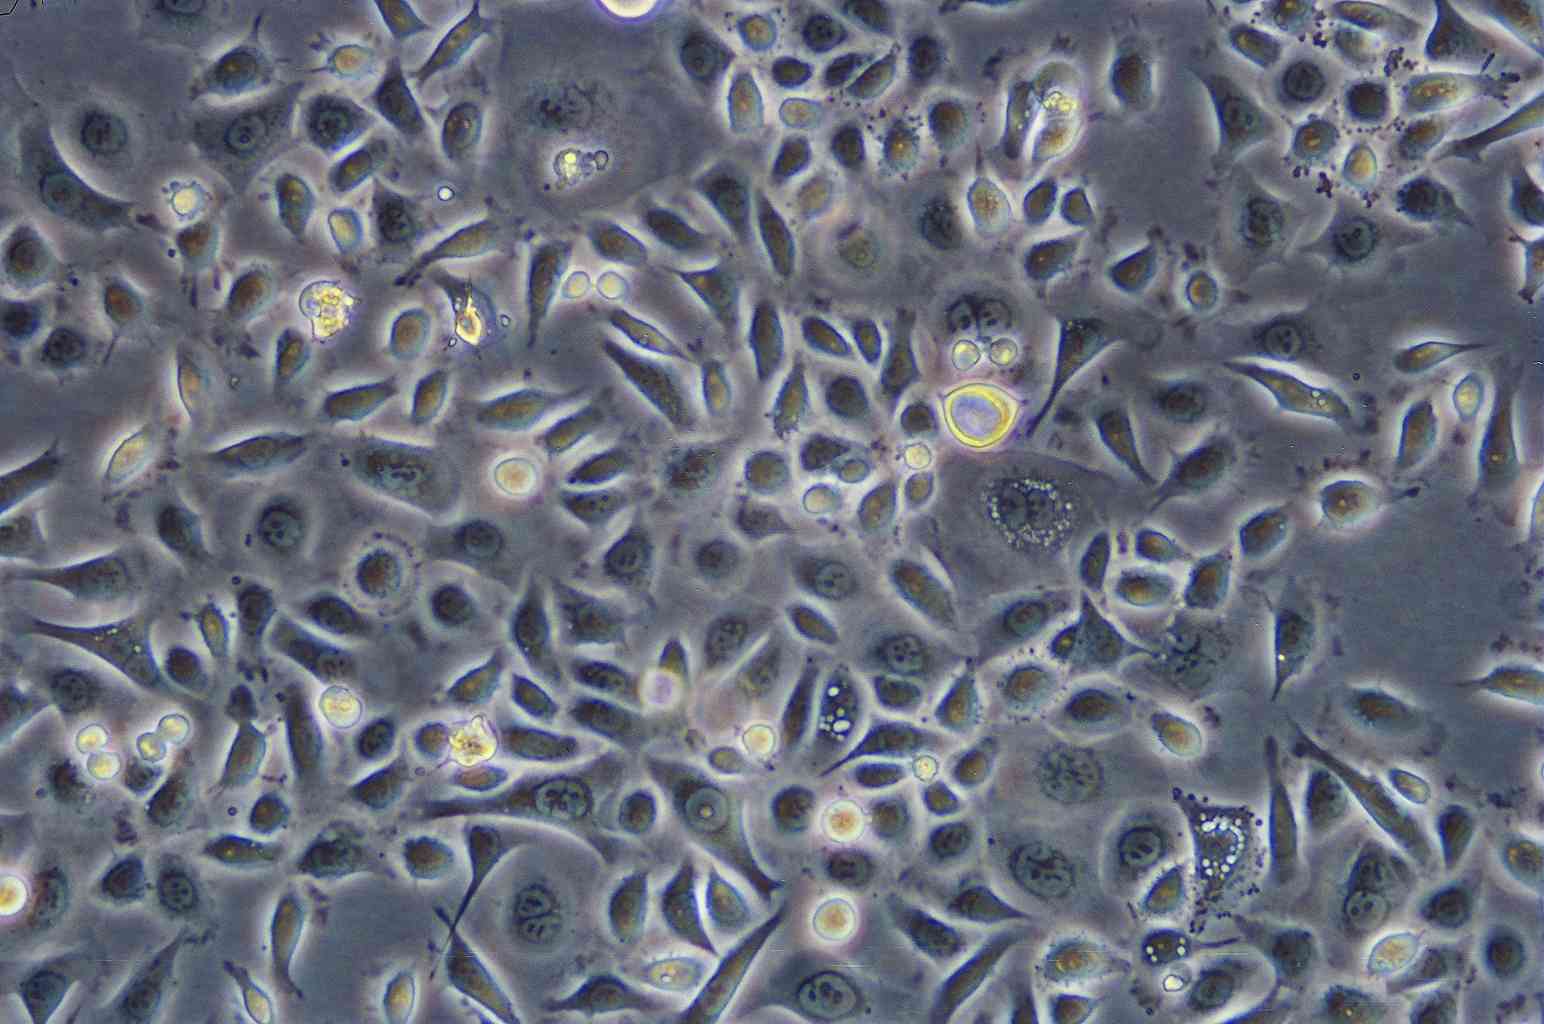 Y3-Ag 1.2.3 Cells